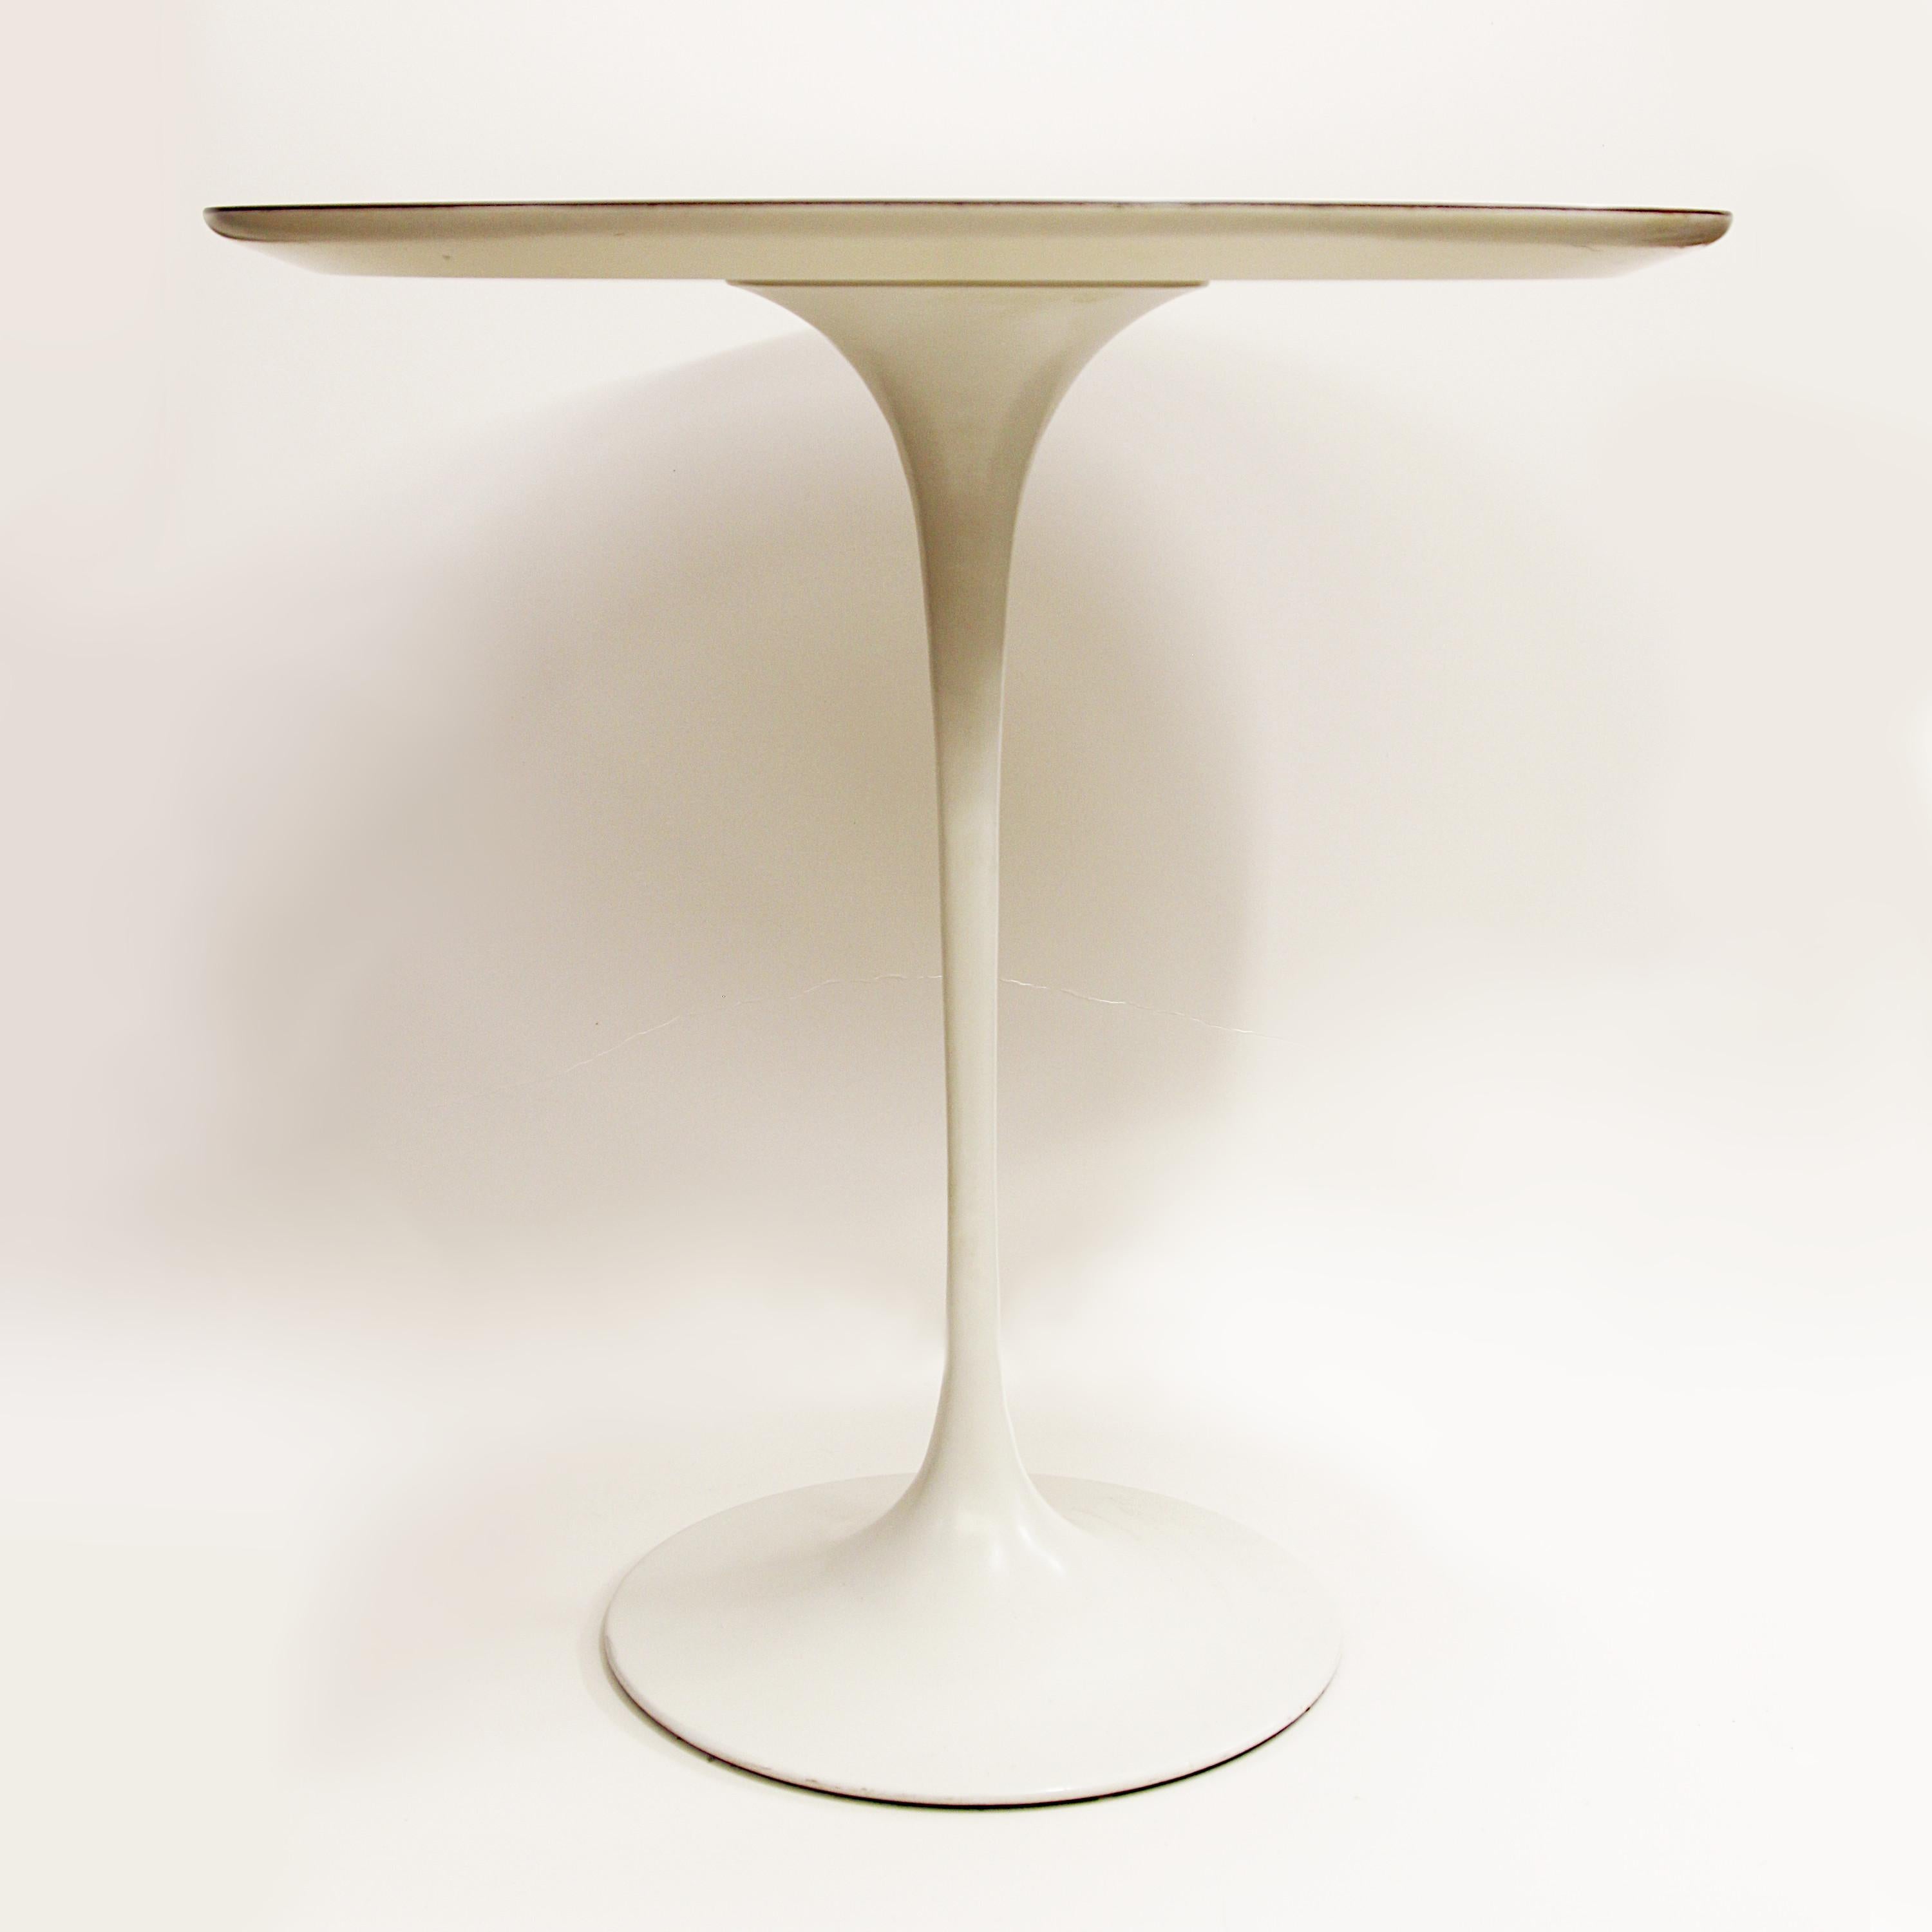 American 1960's Mid-Century Modern Eero Saarinen Pedestal Side End Table by Knoll